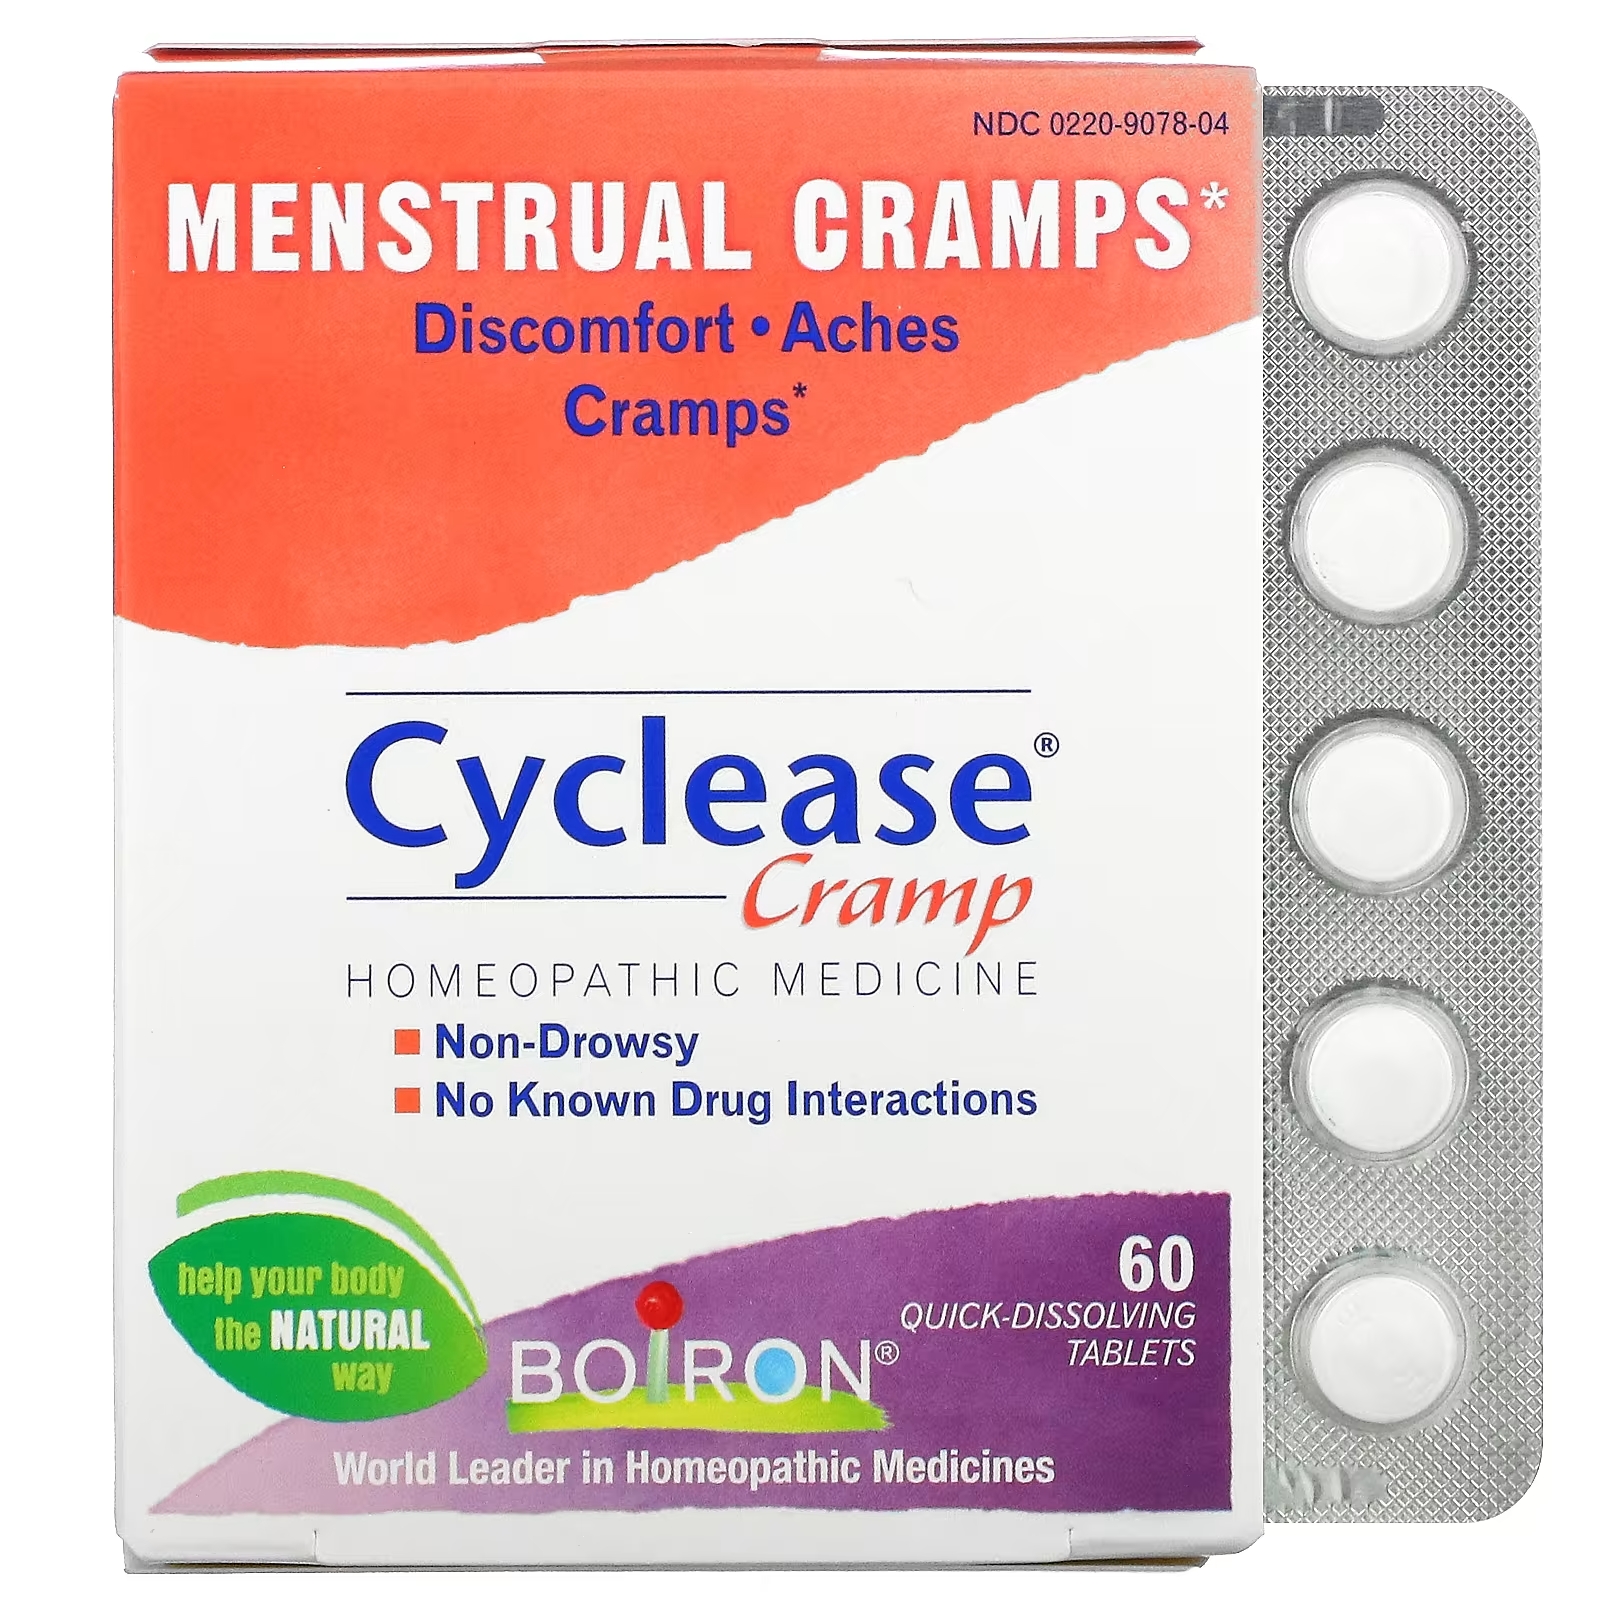 Boiron Cyclease Cramp менструальные спазмы, 60 быстрорастворимых таблеток